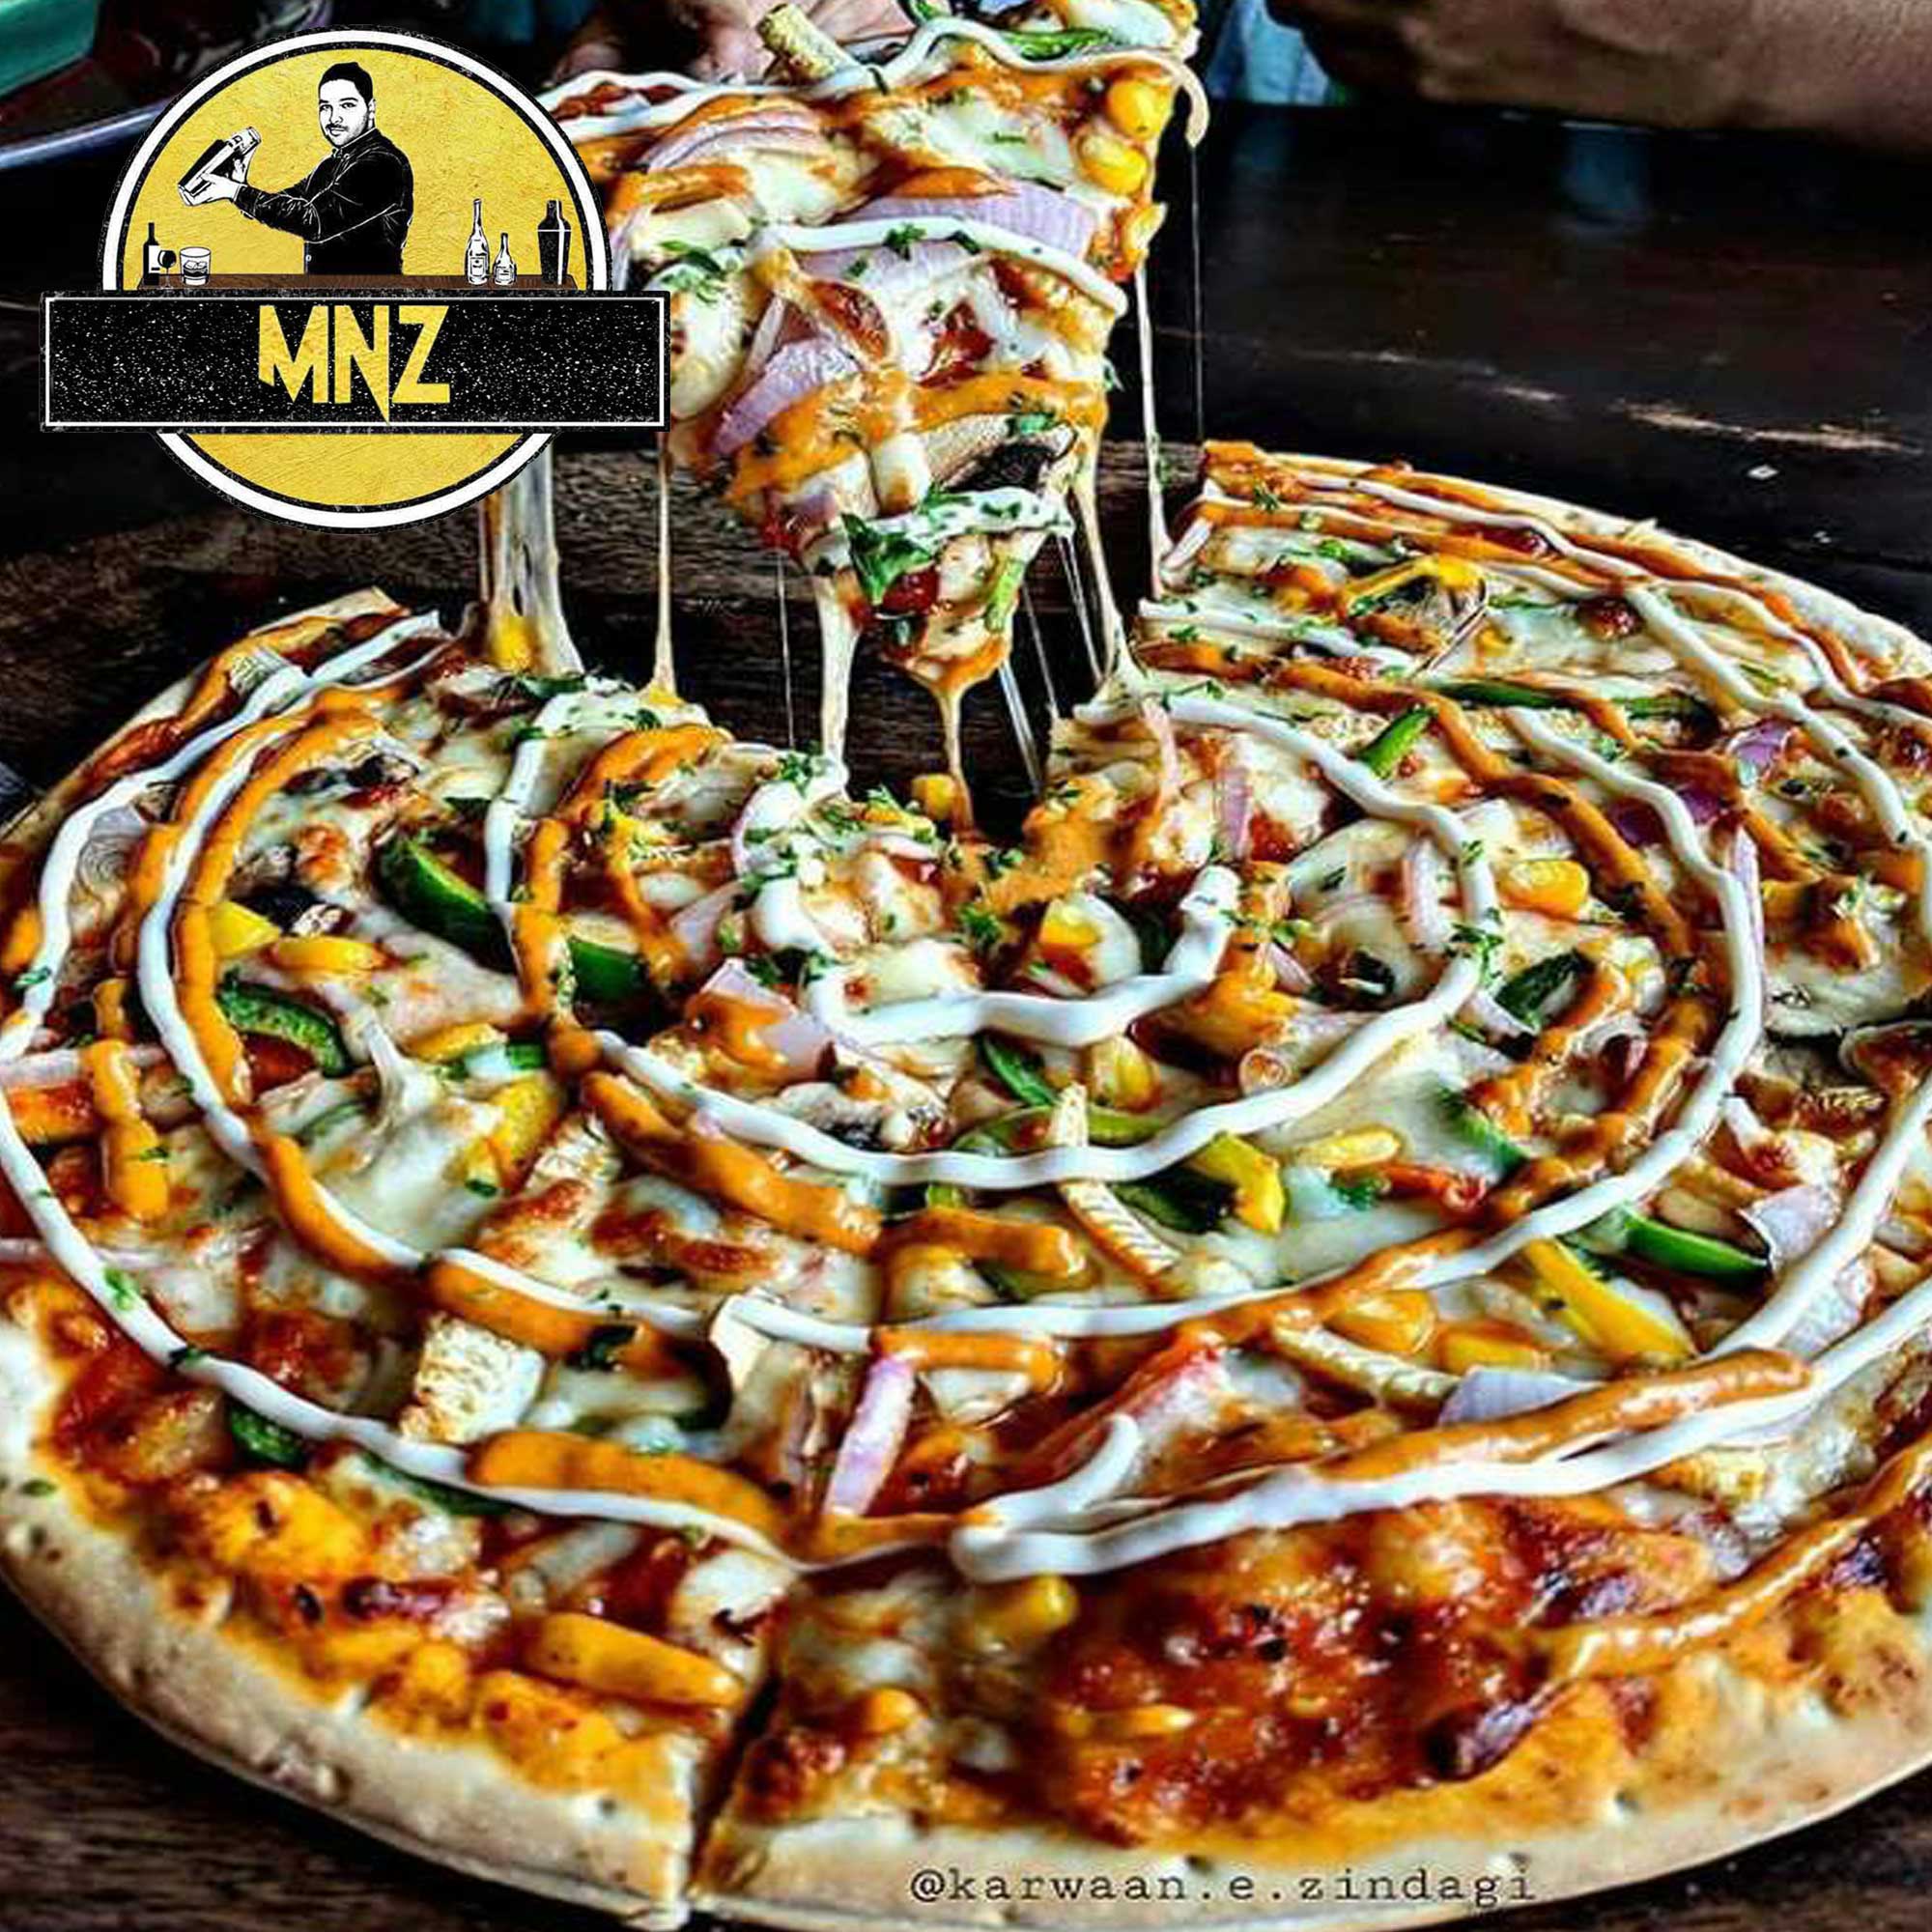 پیتزای دومینو دومین سرویس بزرگ تحویل پیتزا در جهان است.